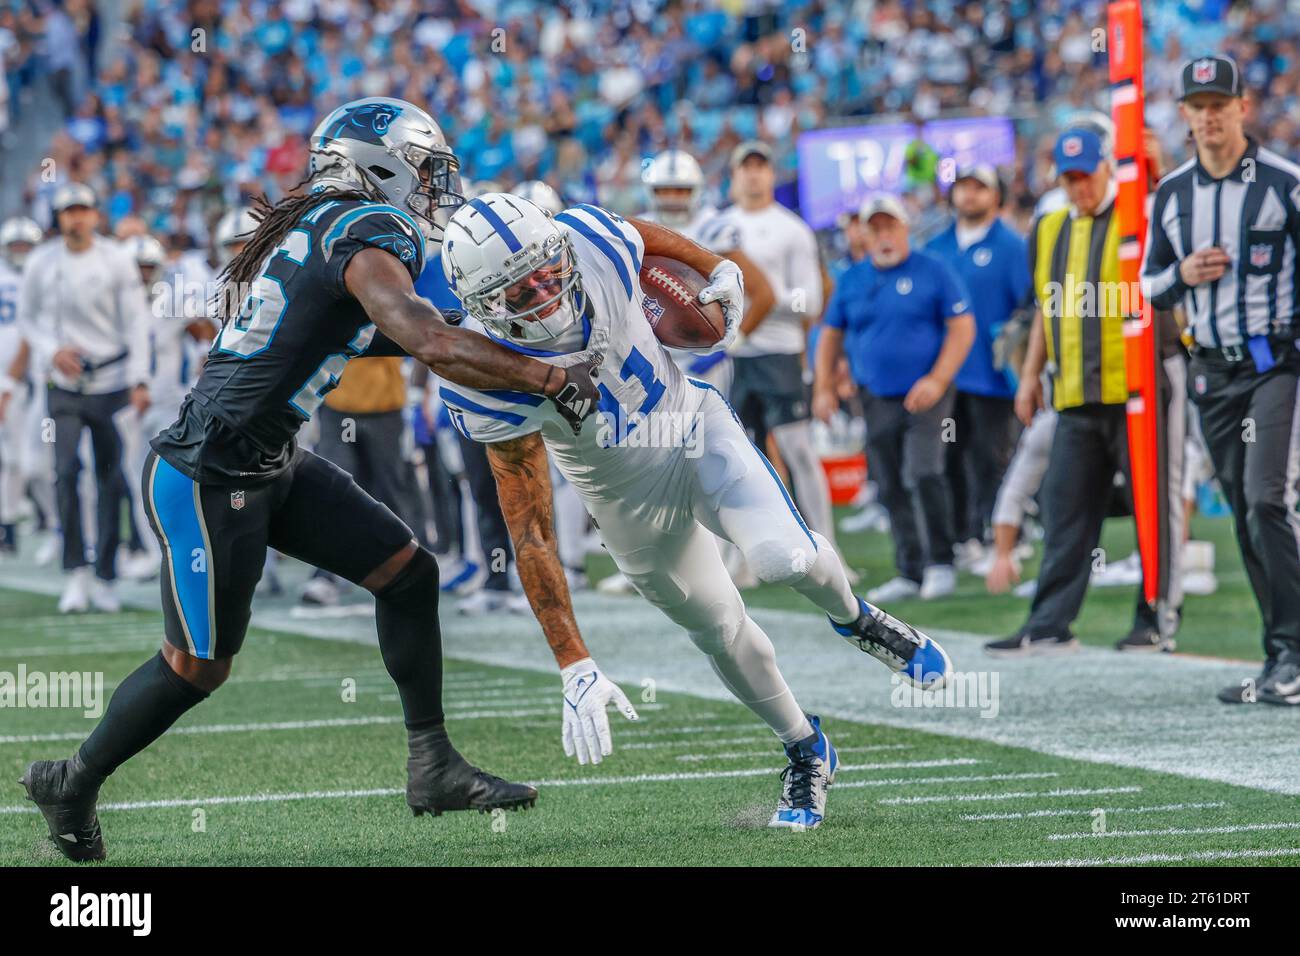 Charlotte, NC, USA: Il wide receiver degli Indianapolis Colts Michael Pittman Jr. (11) corre con il pallone mentre è difeso dal cornerback dei Carolina Panthers Donte Foto Stock